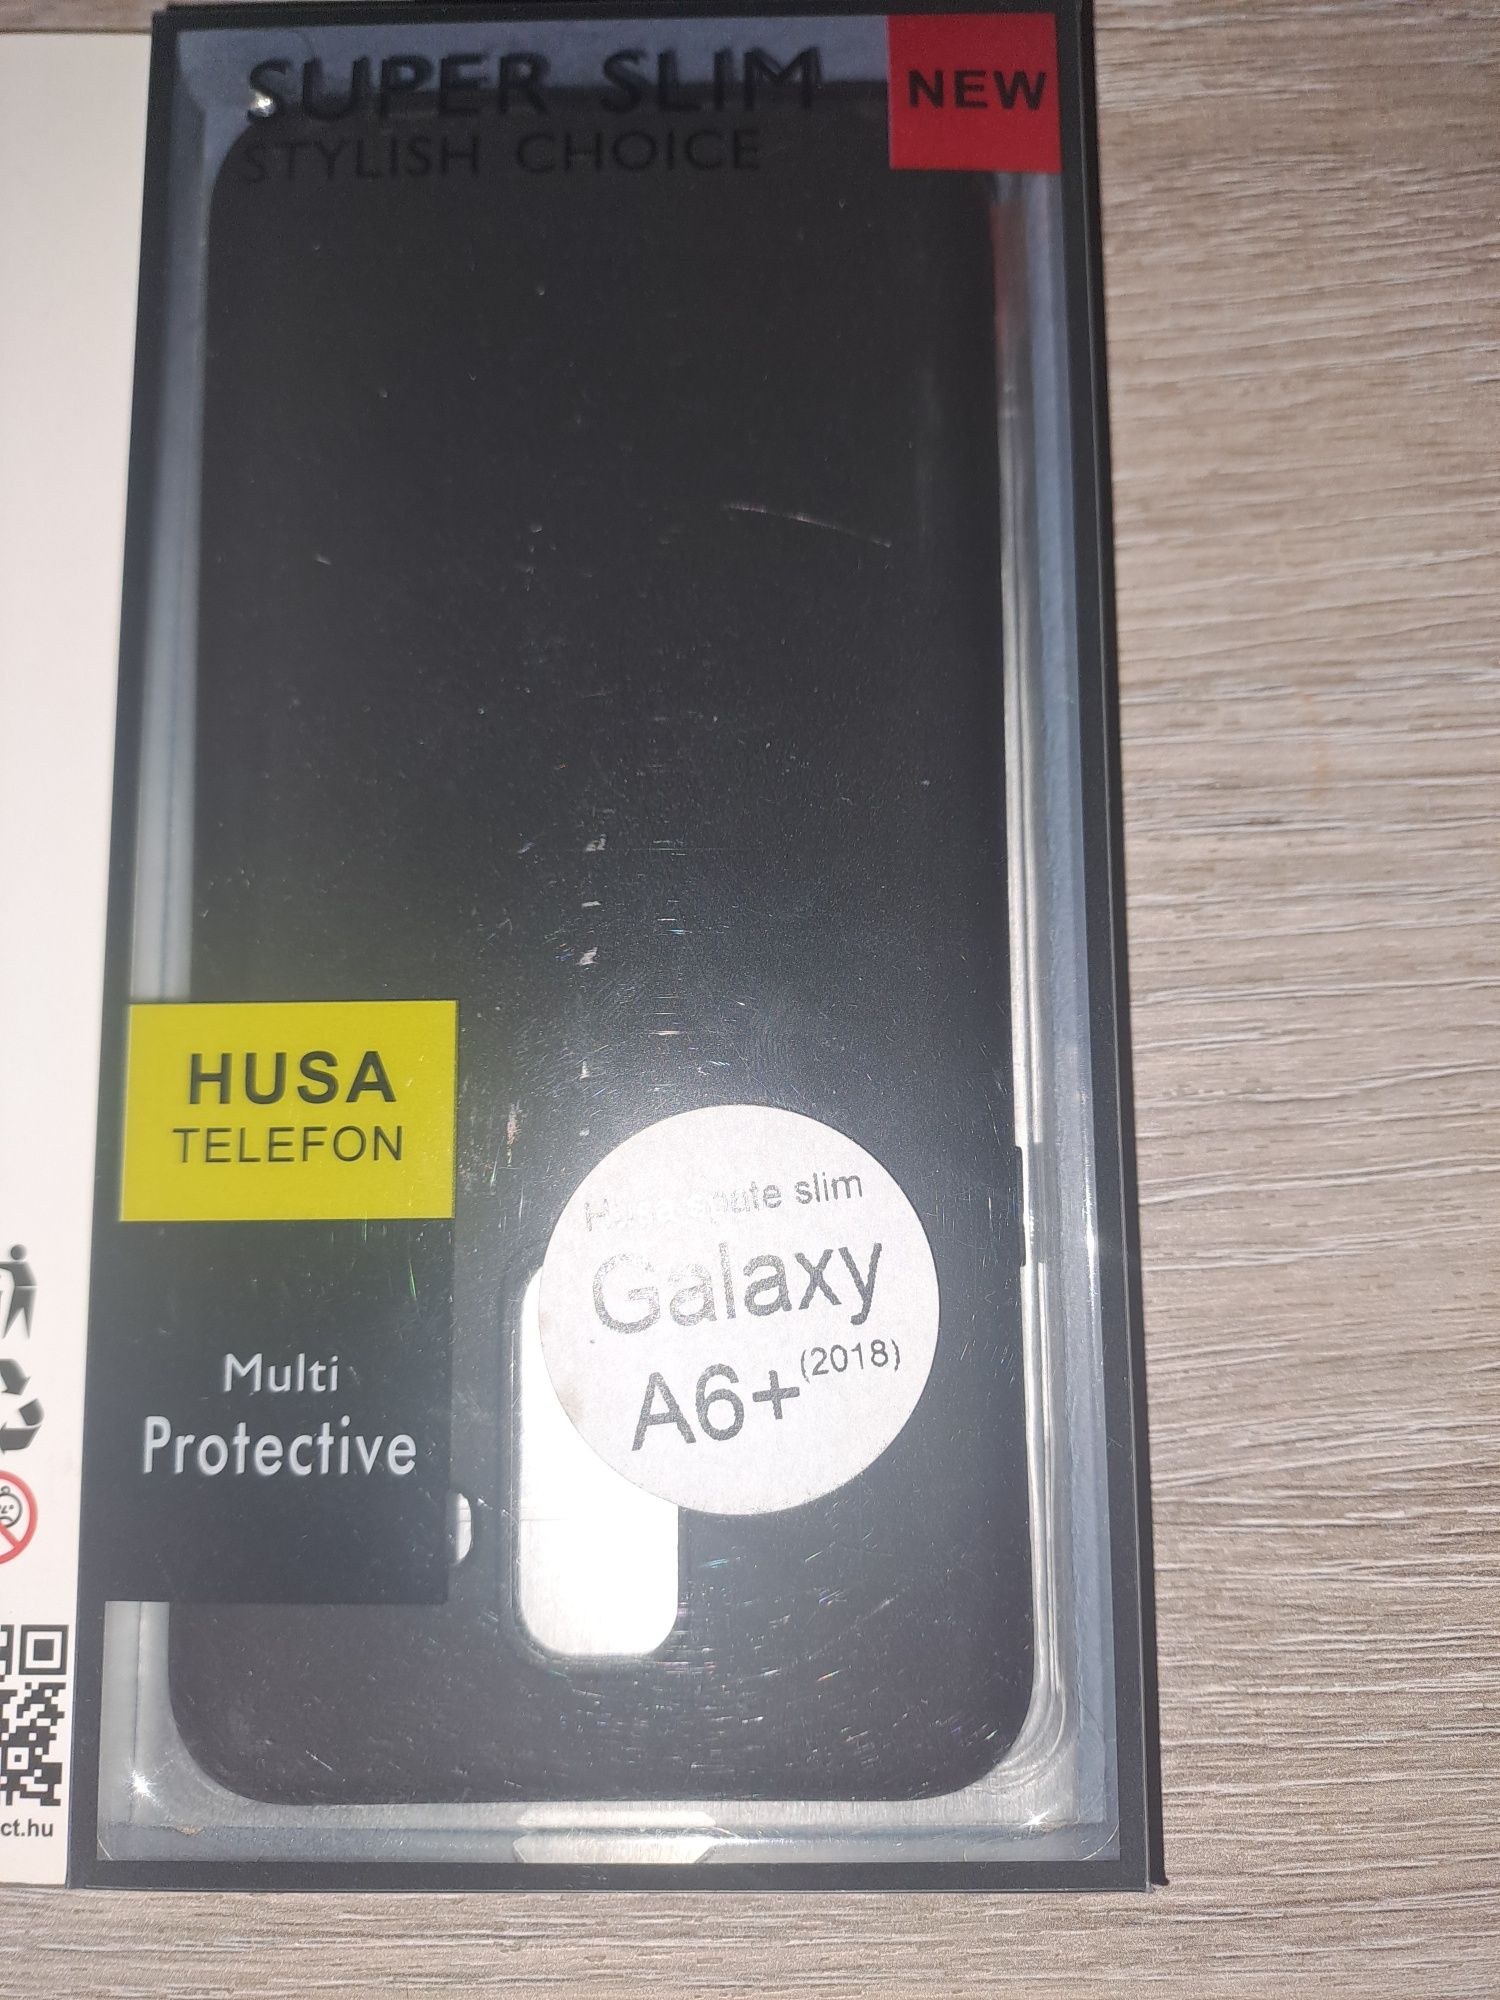 Husa și folie protecție pentru Samsung a6plus.